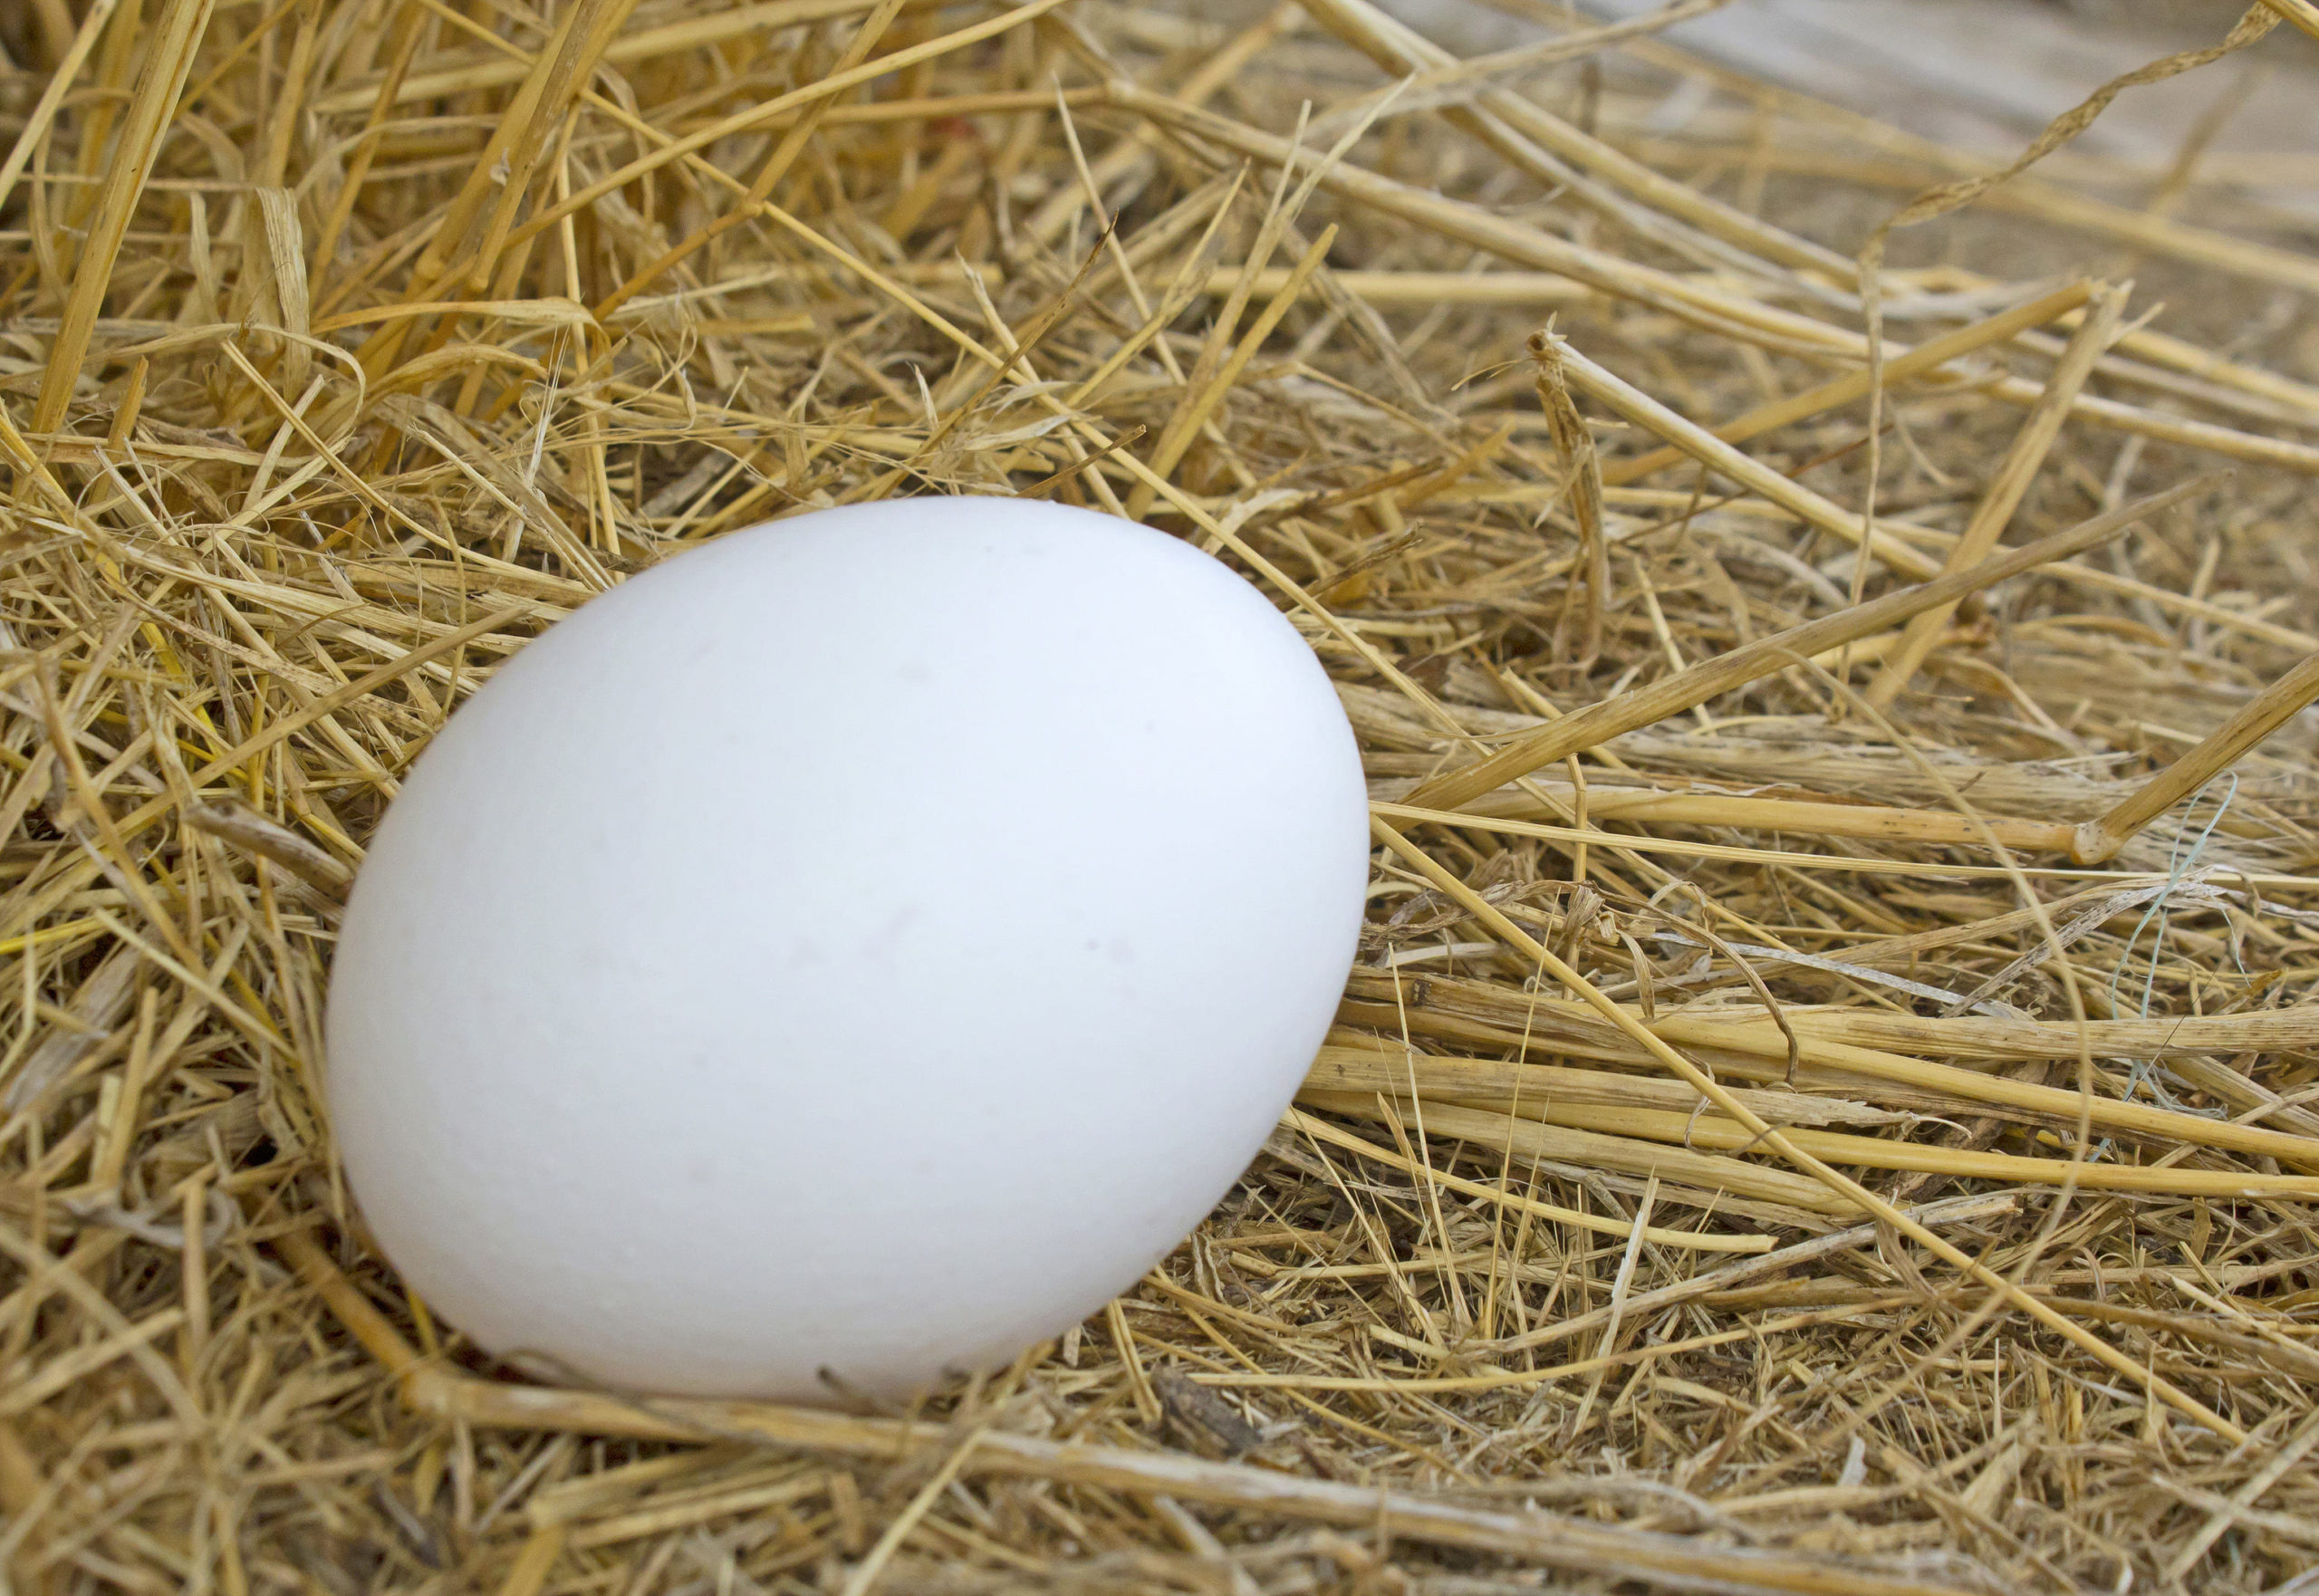 雞蛋是優質蛋白質來源